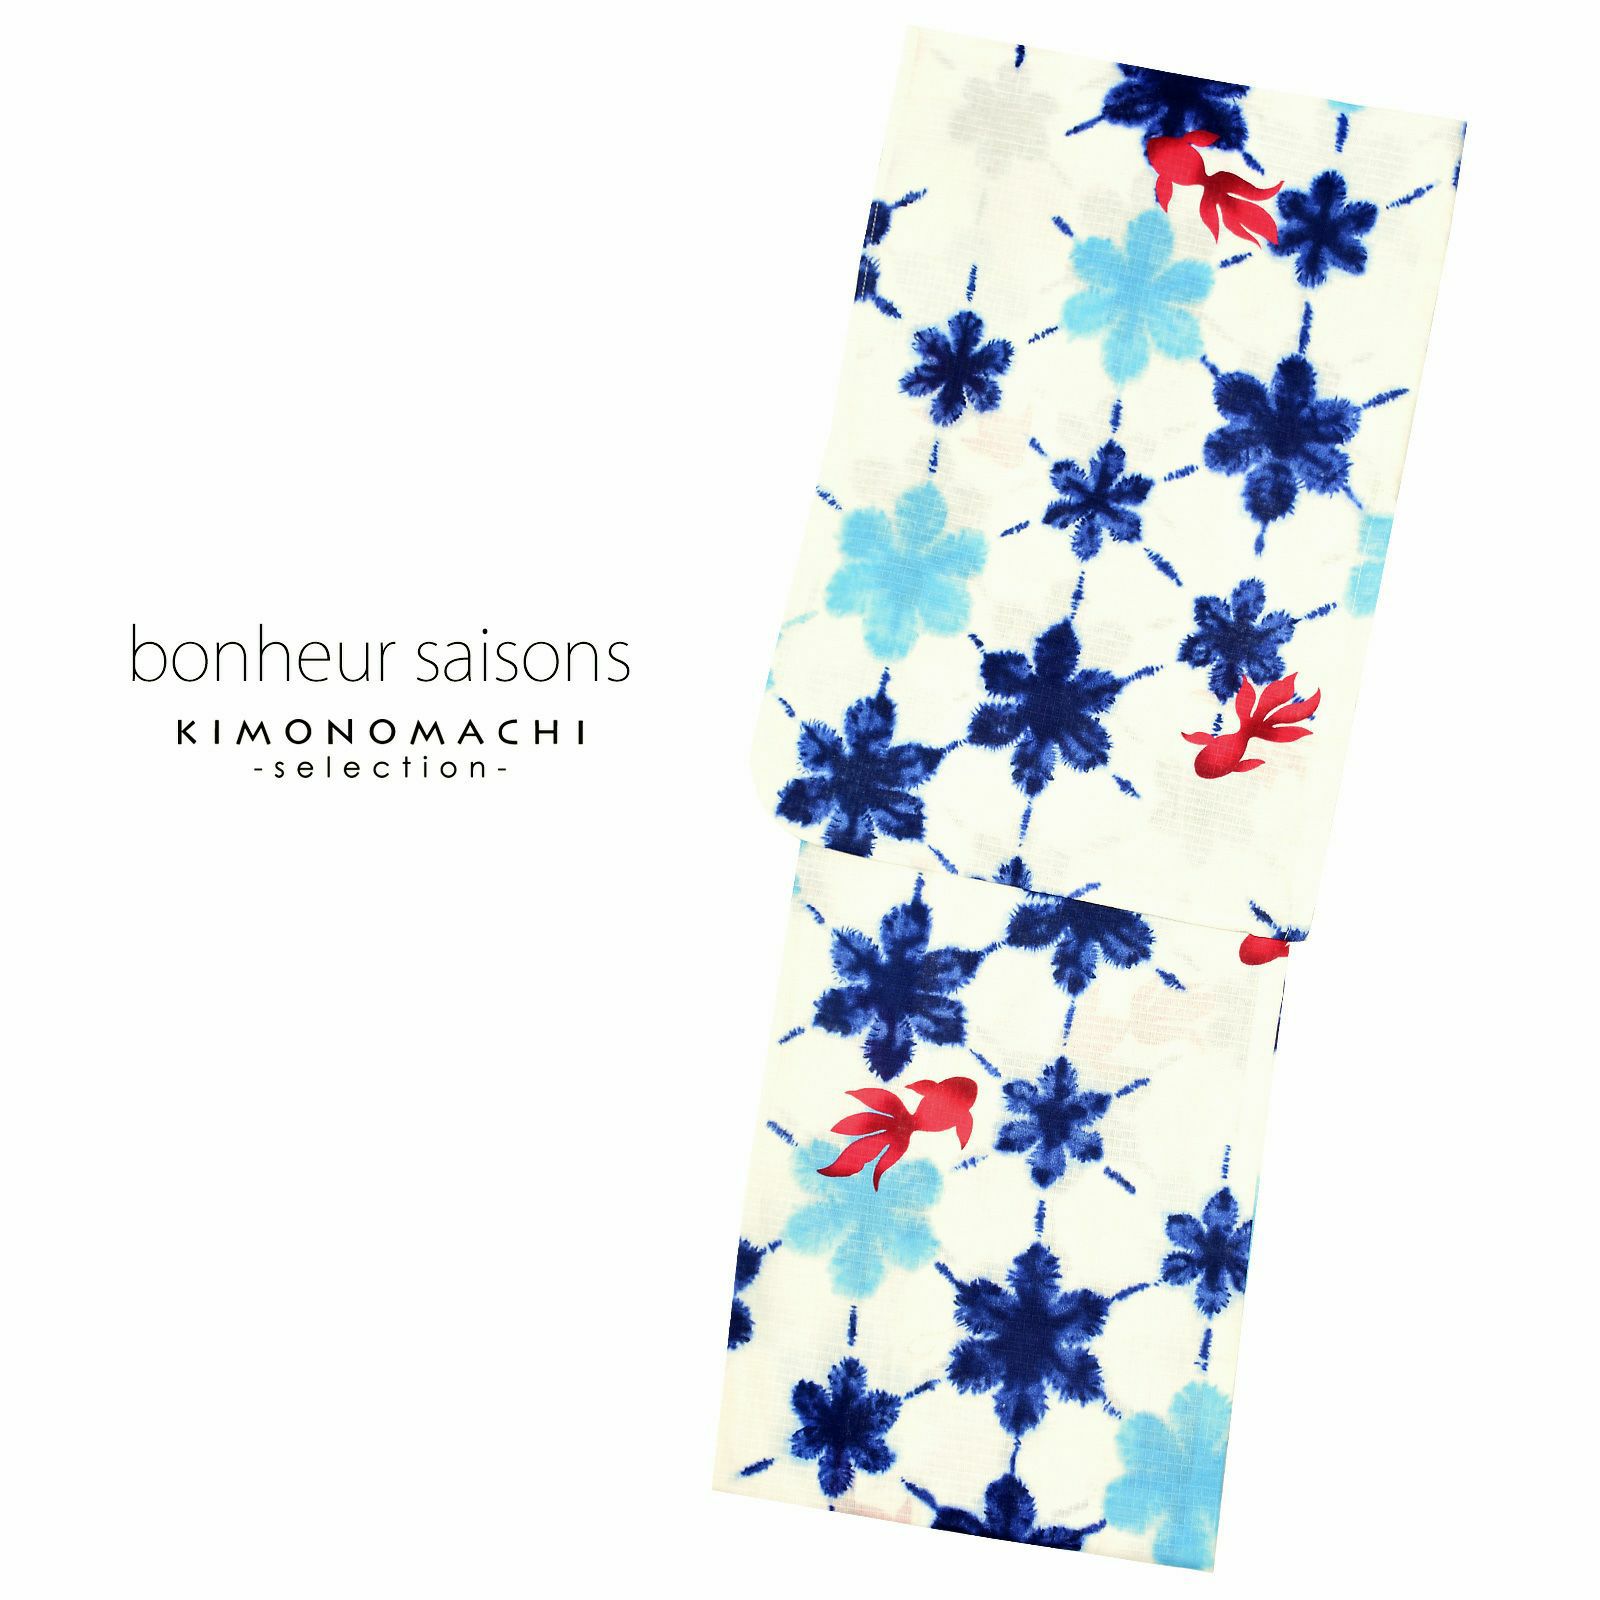 bonheur saisons ブランド浴衣単品 「金魚 雪花絞り風 淡いクリーム